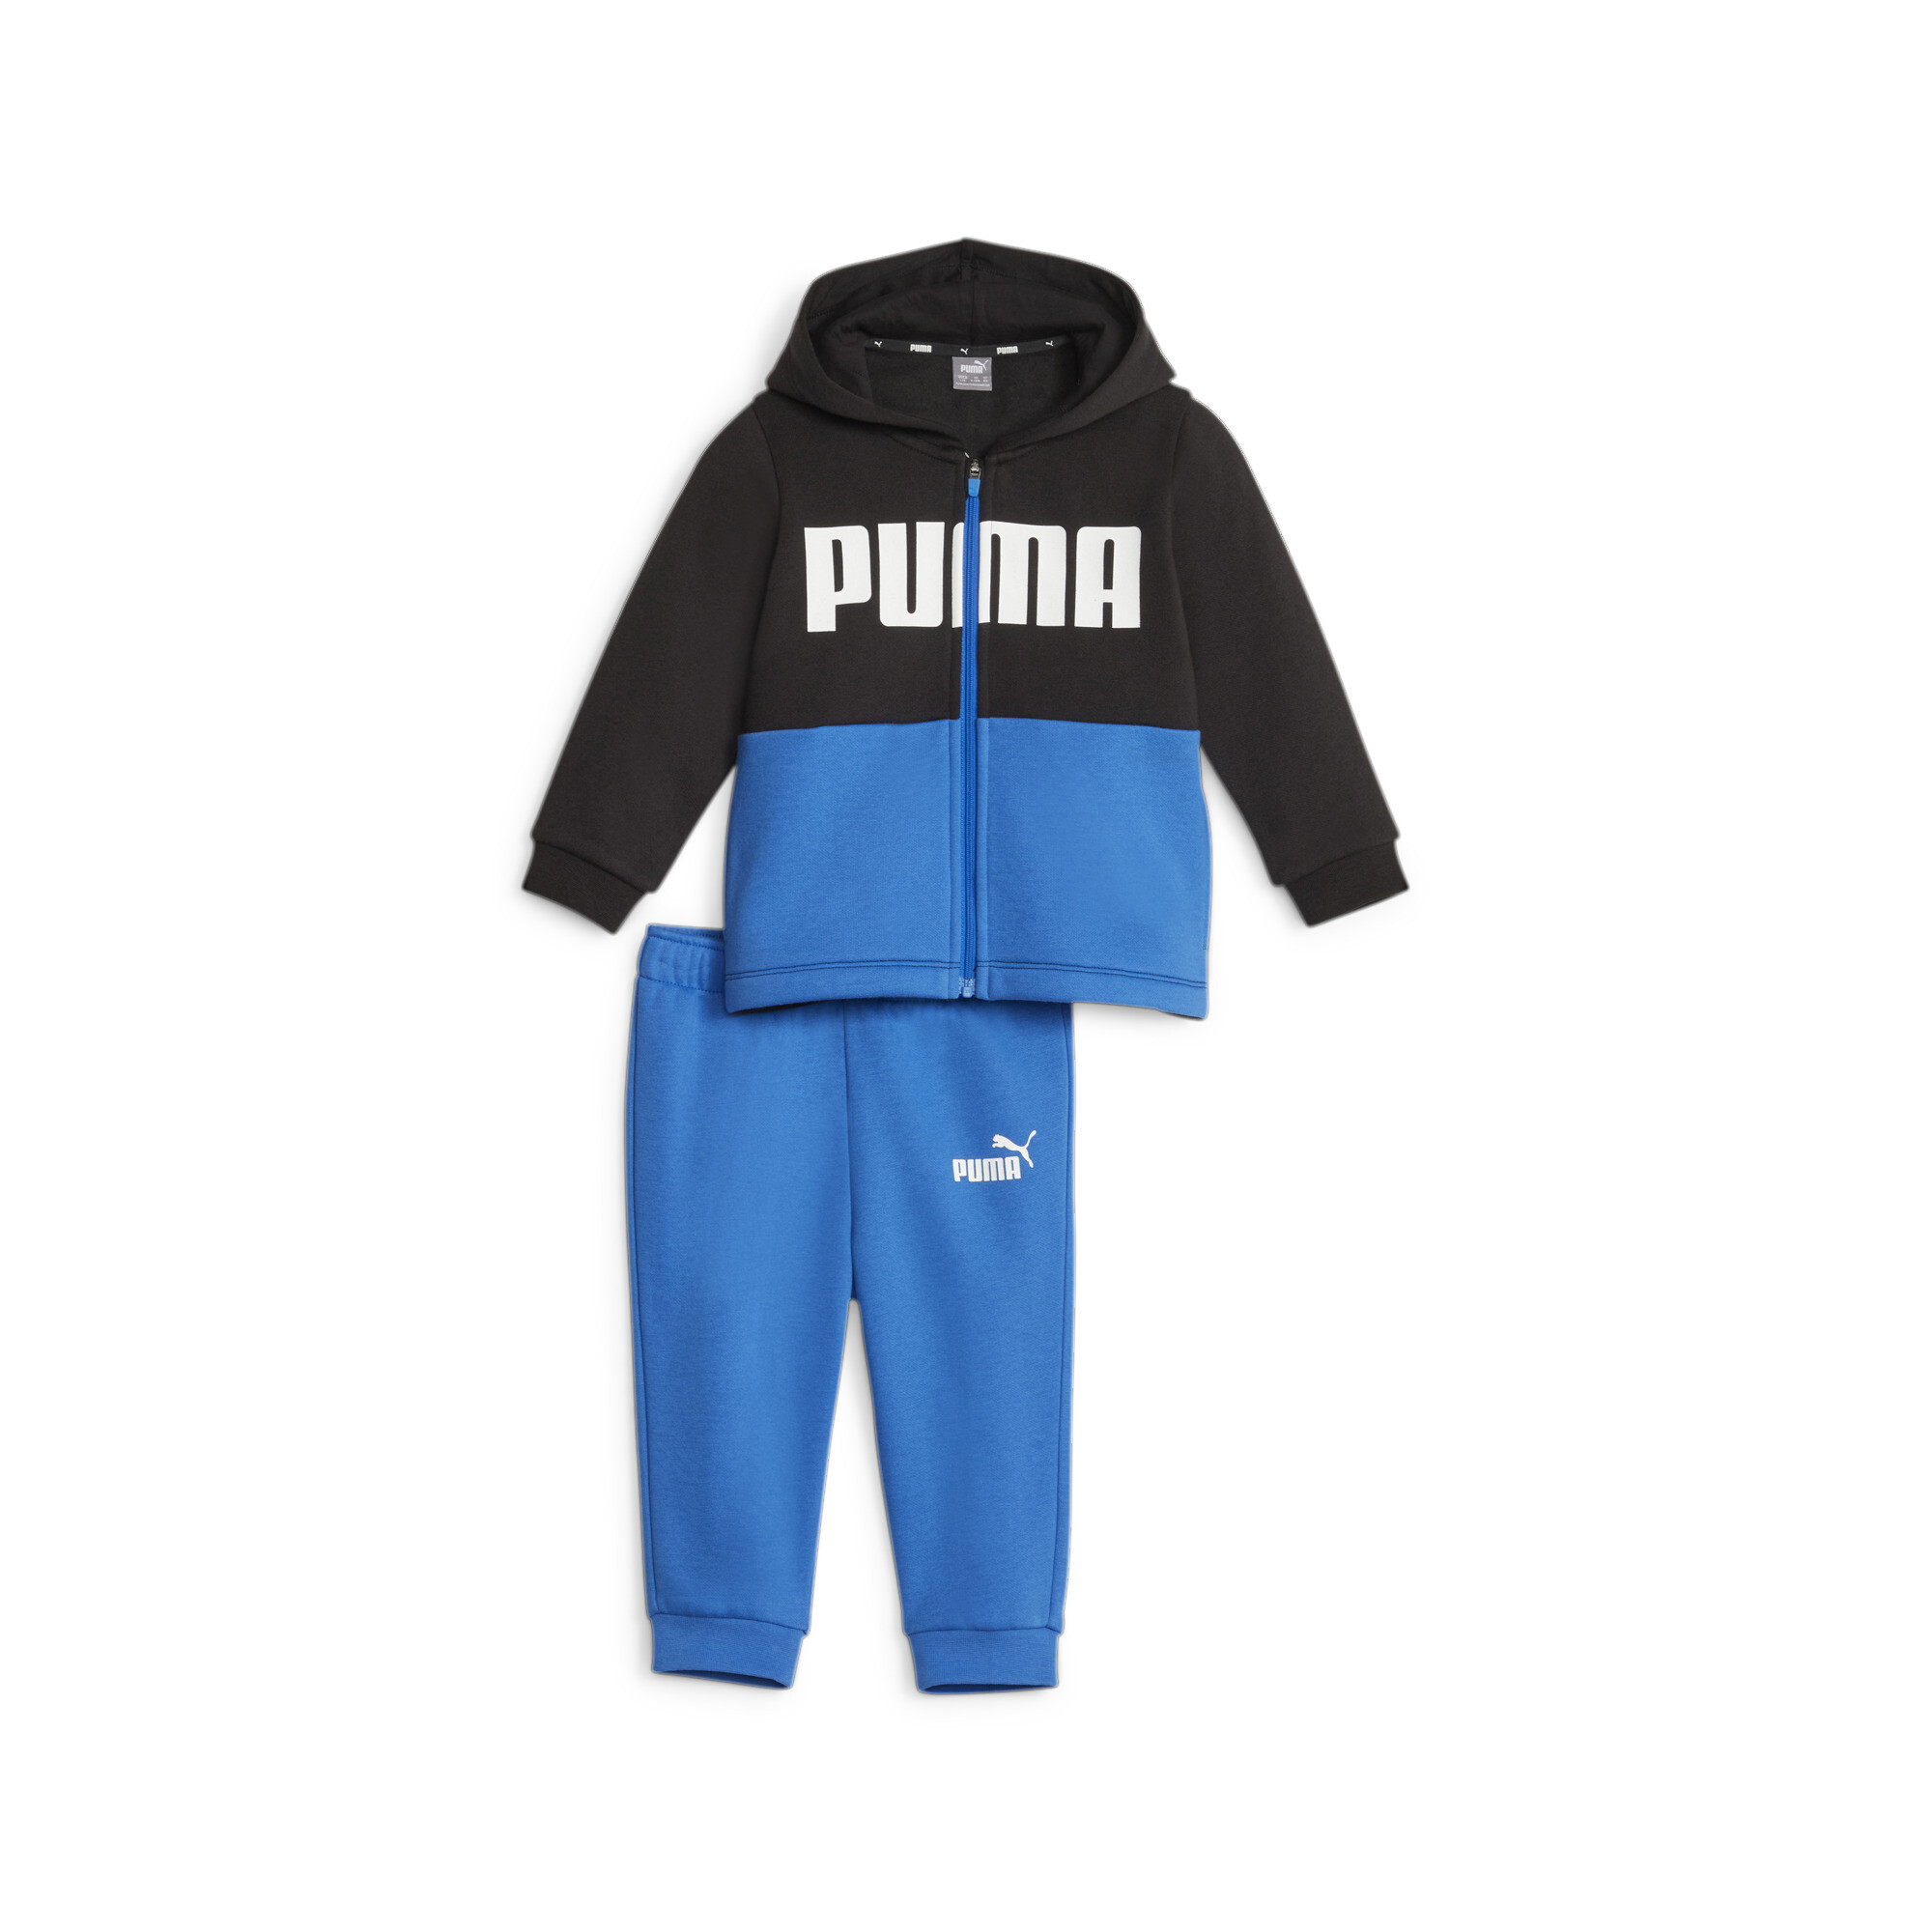 PUMA Minicats Colourblock Jogger Suit Babies In Blue, Size 2-4 Months